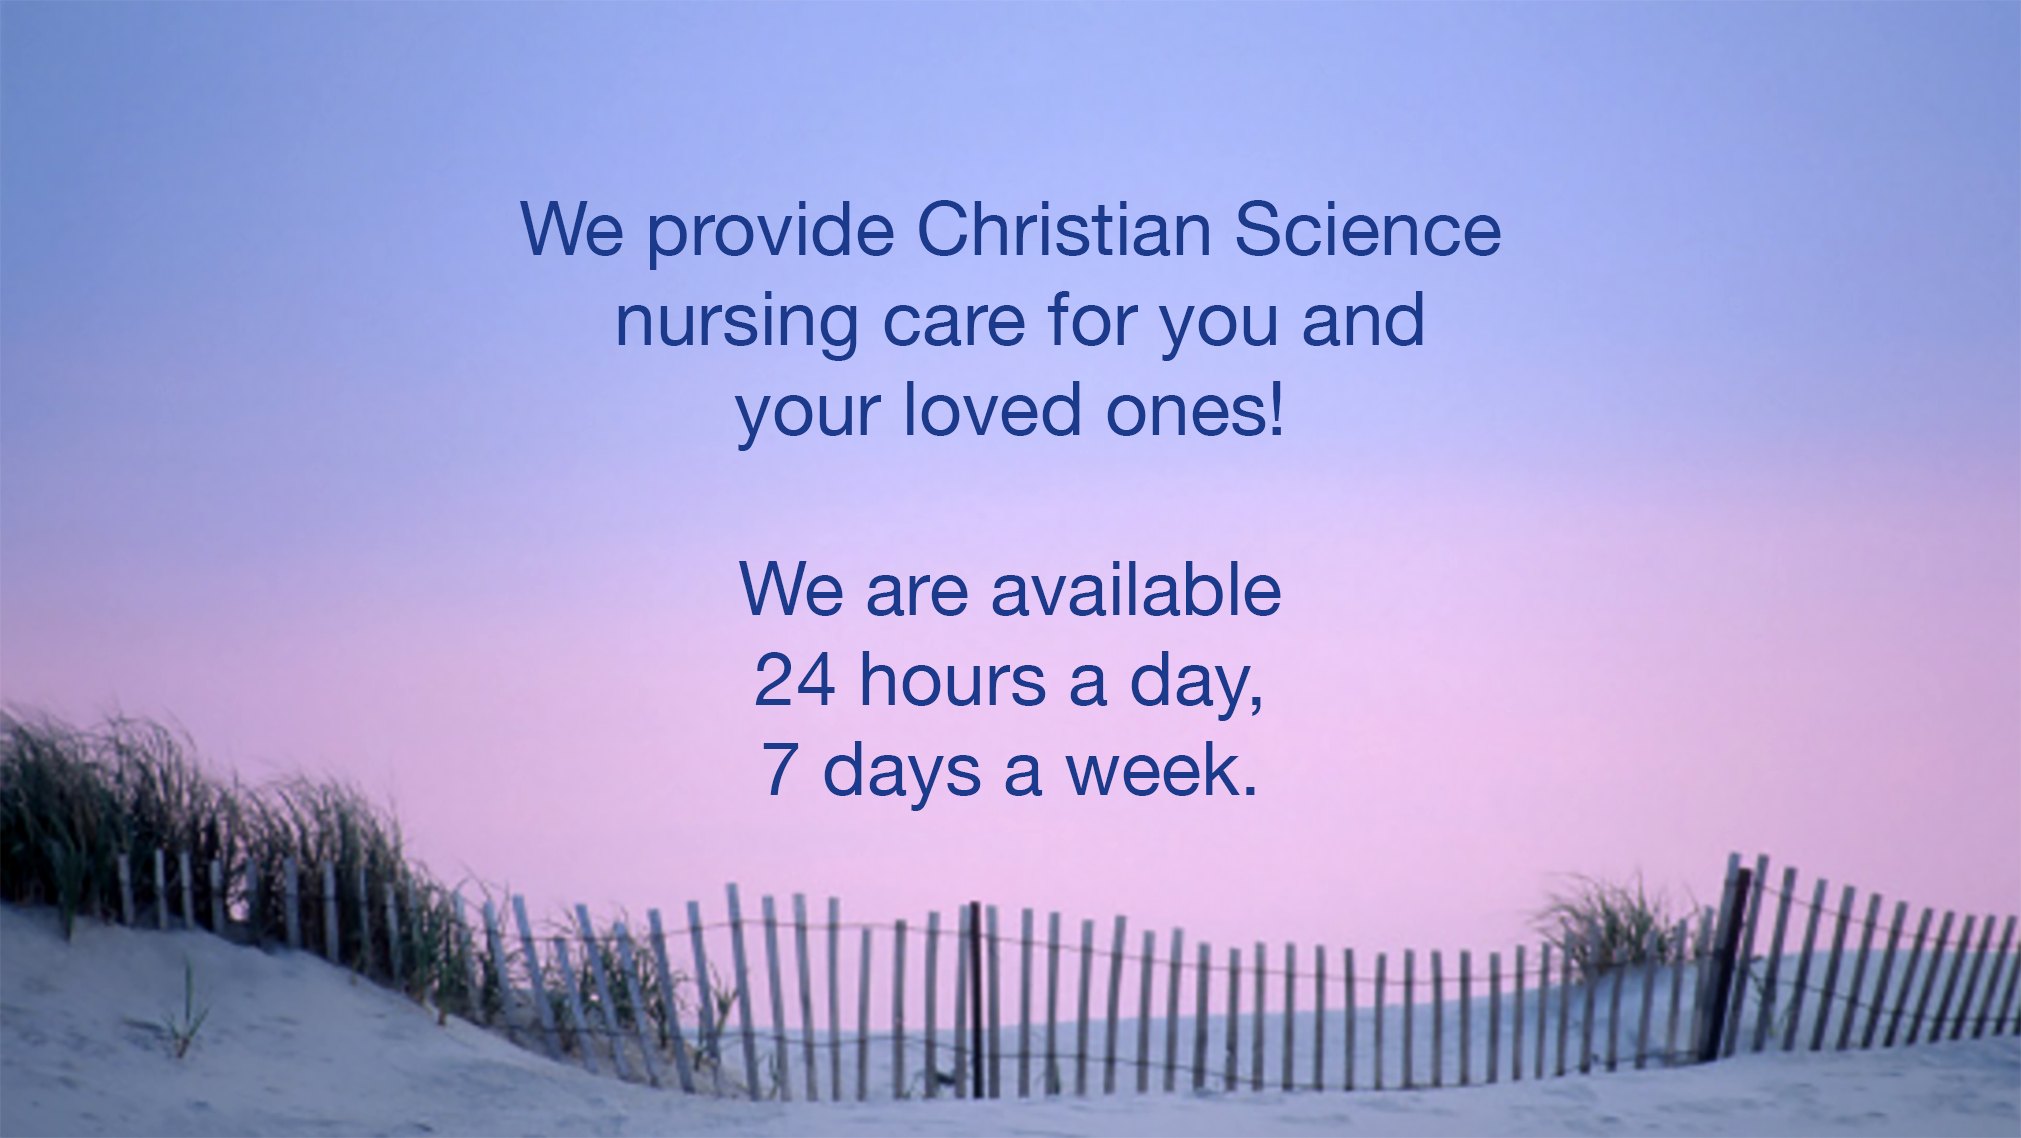 slides-nj-nurse-we-provide.png